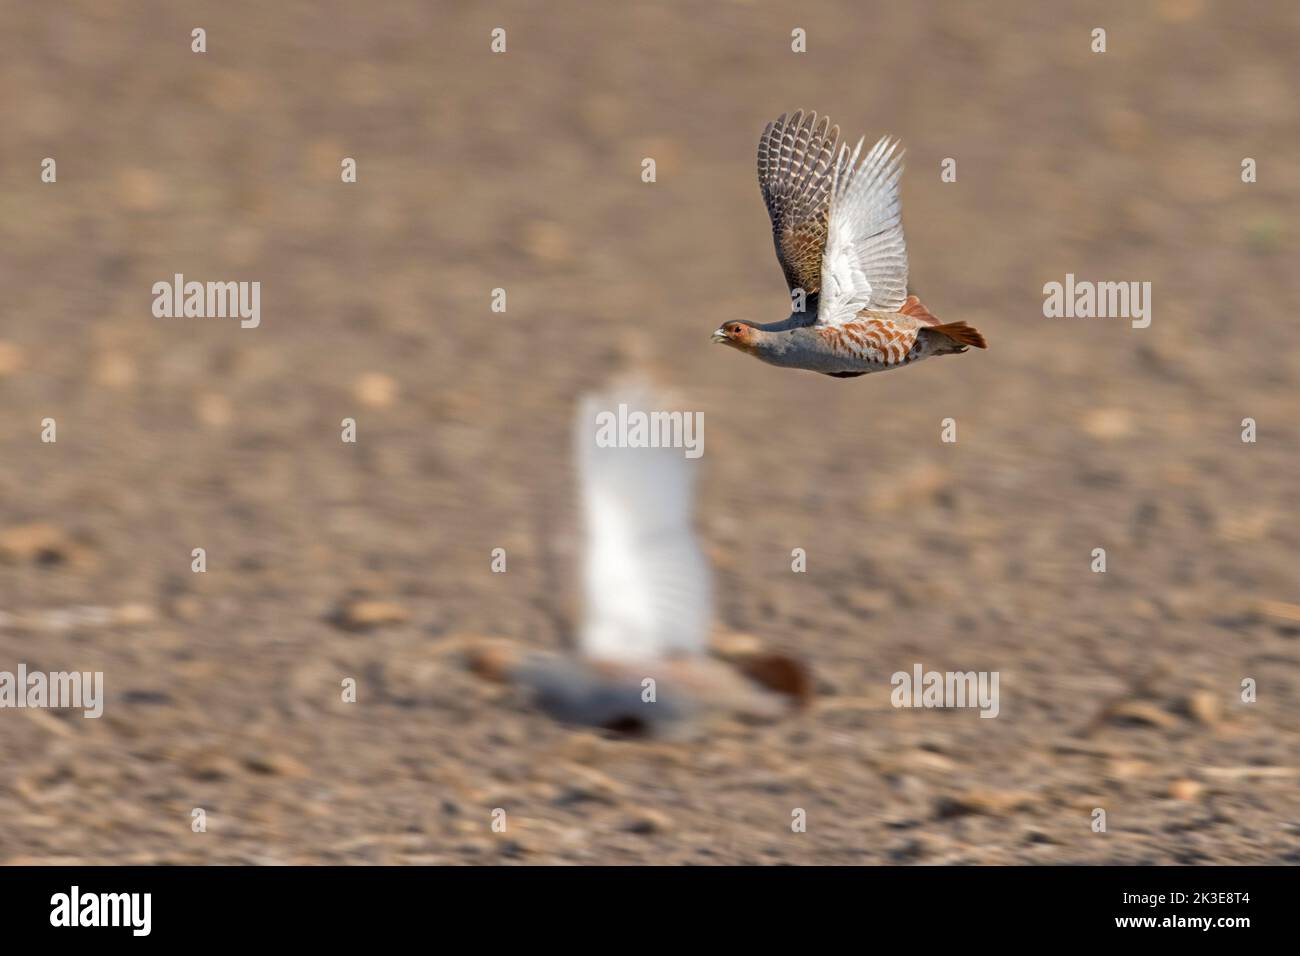 Dos perdices grises / perdices ingleses / hunos (Perdix perdix) machos volando sobre el campo en primavera Foto de stock